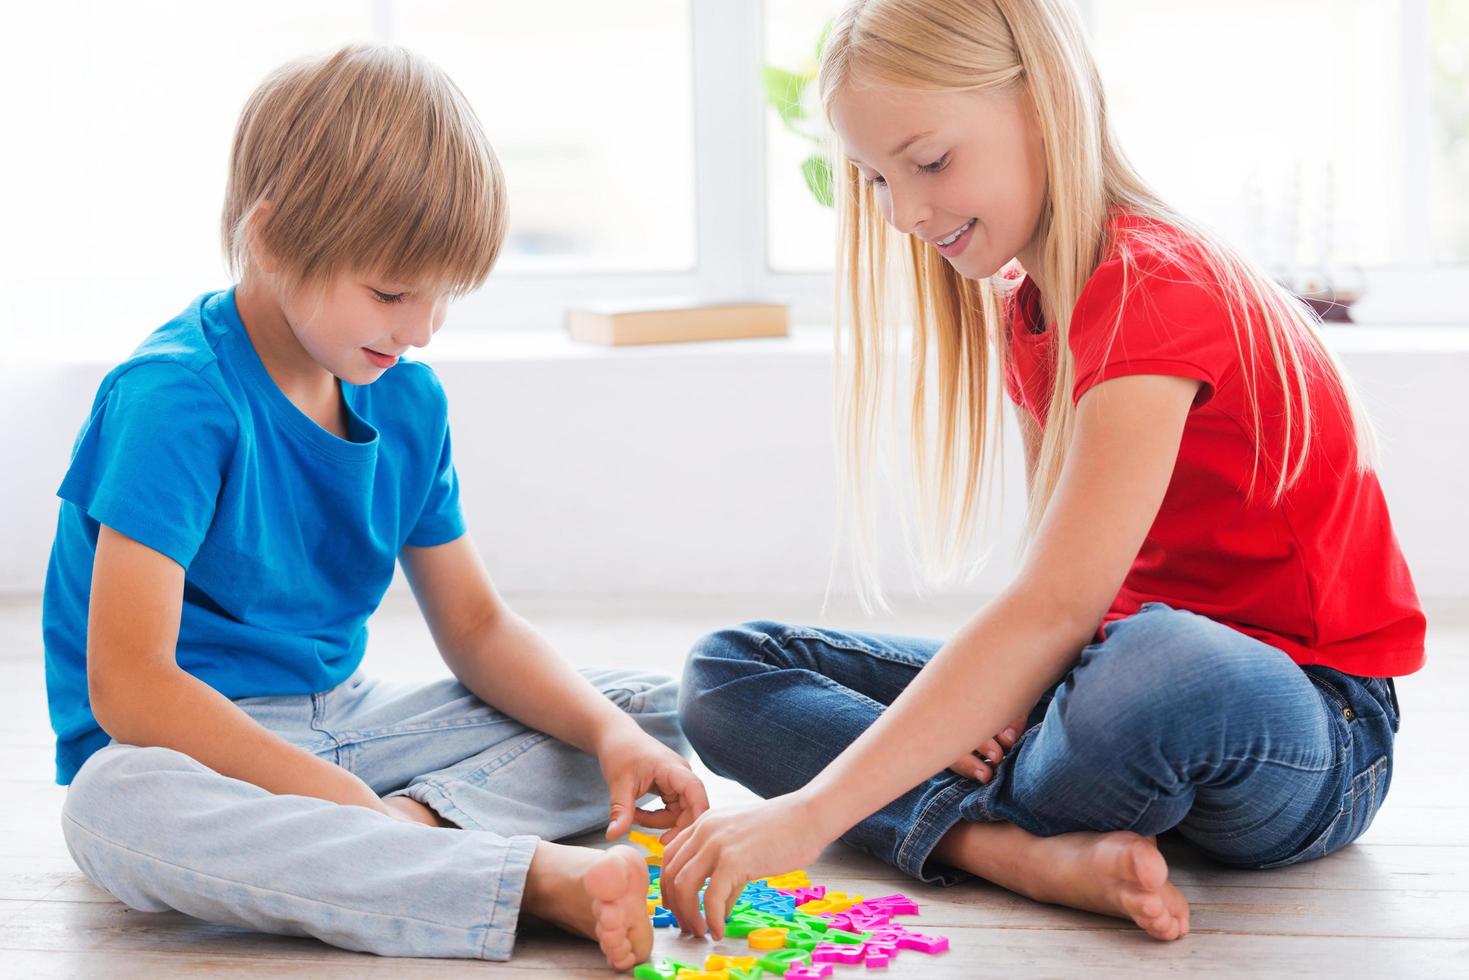 crianças brincando em casa. duas crianças bonitinhas brincando com letras coloridas de plástico enquanto está sentado no chão de madeira foto